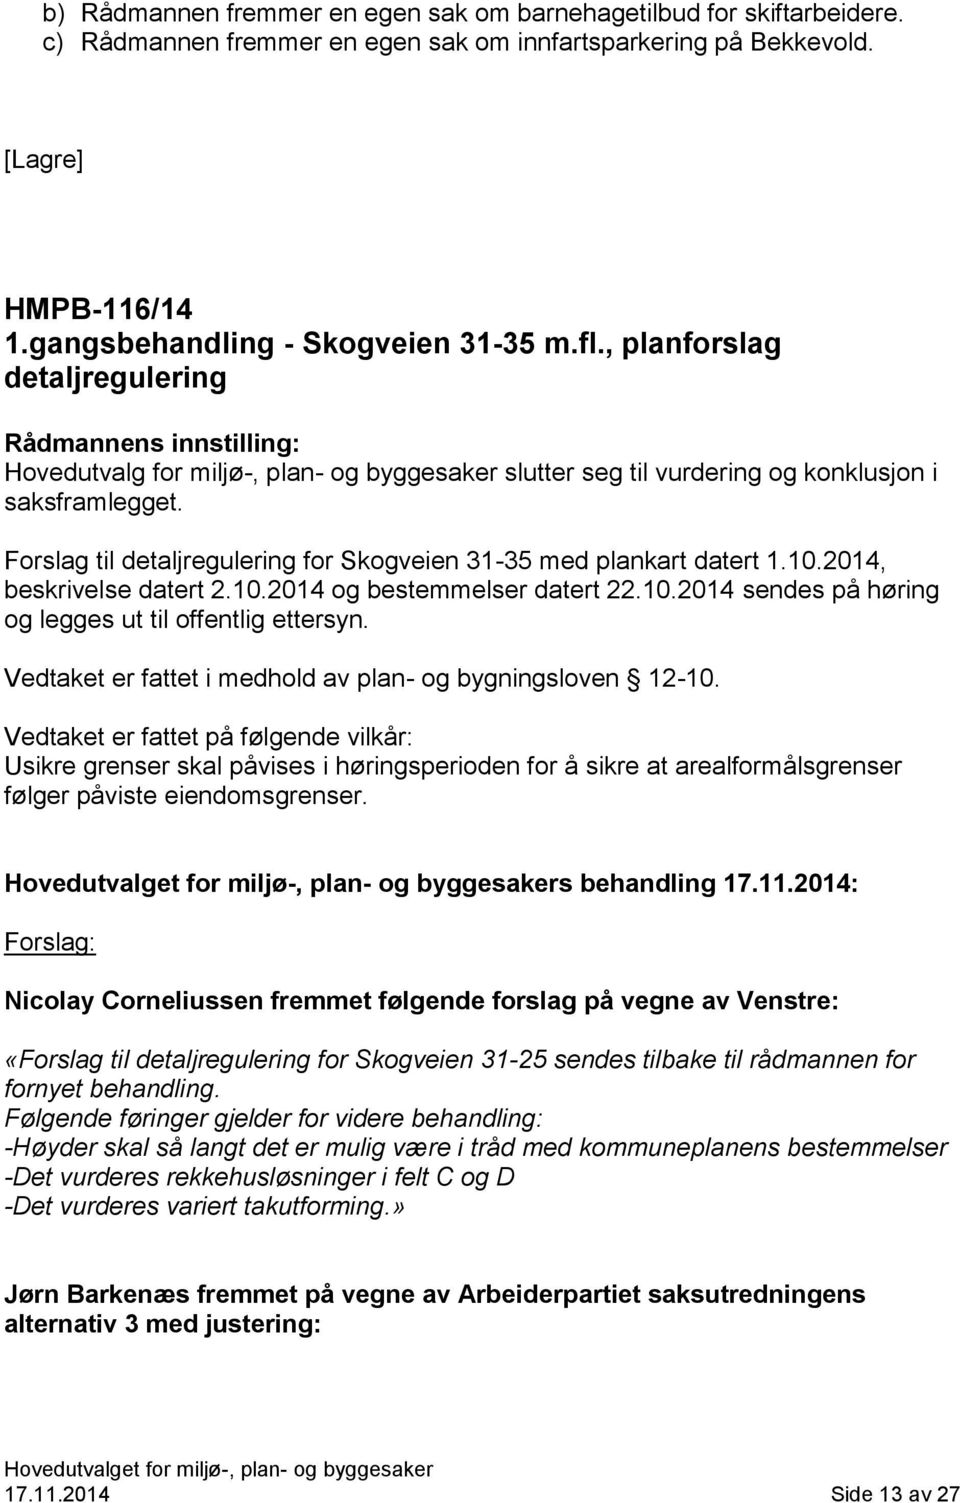 Forslag til detaljregulering for Skogveien 31-35 med plankart datert 1.10.2014, beskrivelse datert 2.10.2014 og bestemmelser datert 22.10.2014 sendes på høring og legges ut til offentlig ettersyn.